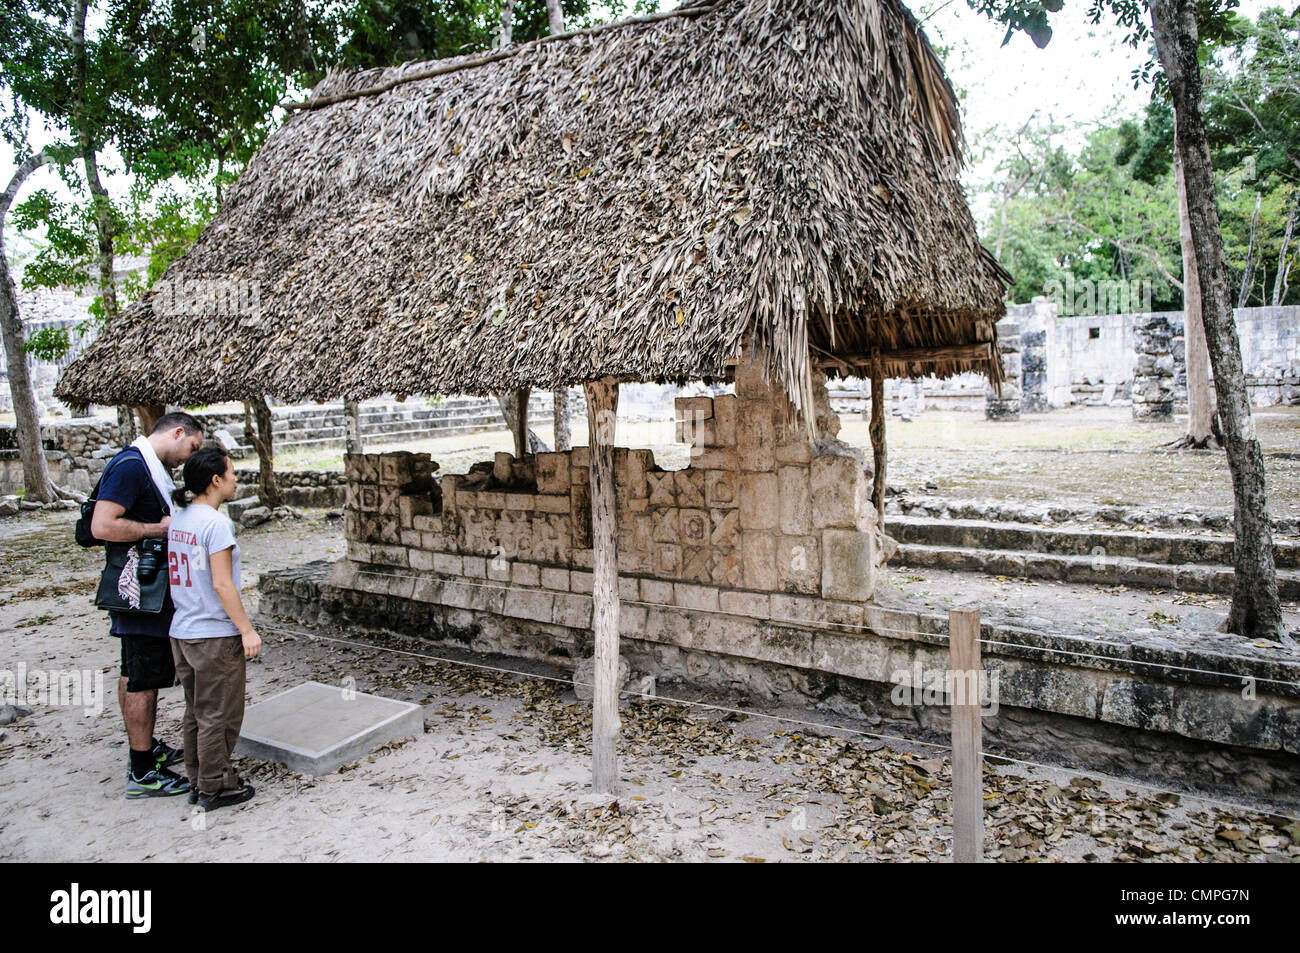 CHICHEN ITZA, Mexique - les touristes à la recherche de quelques pierres sculptées qui sont des vestiges du palais de la colonnes sculptées à la Zone archéologique de Chichen Itza au Mexique. Banque D'Images